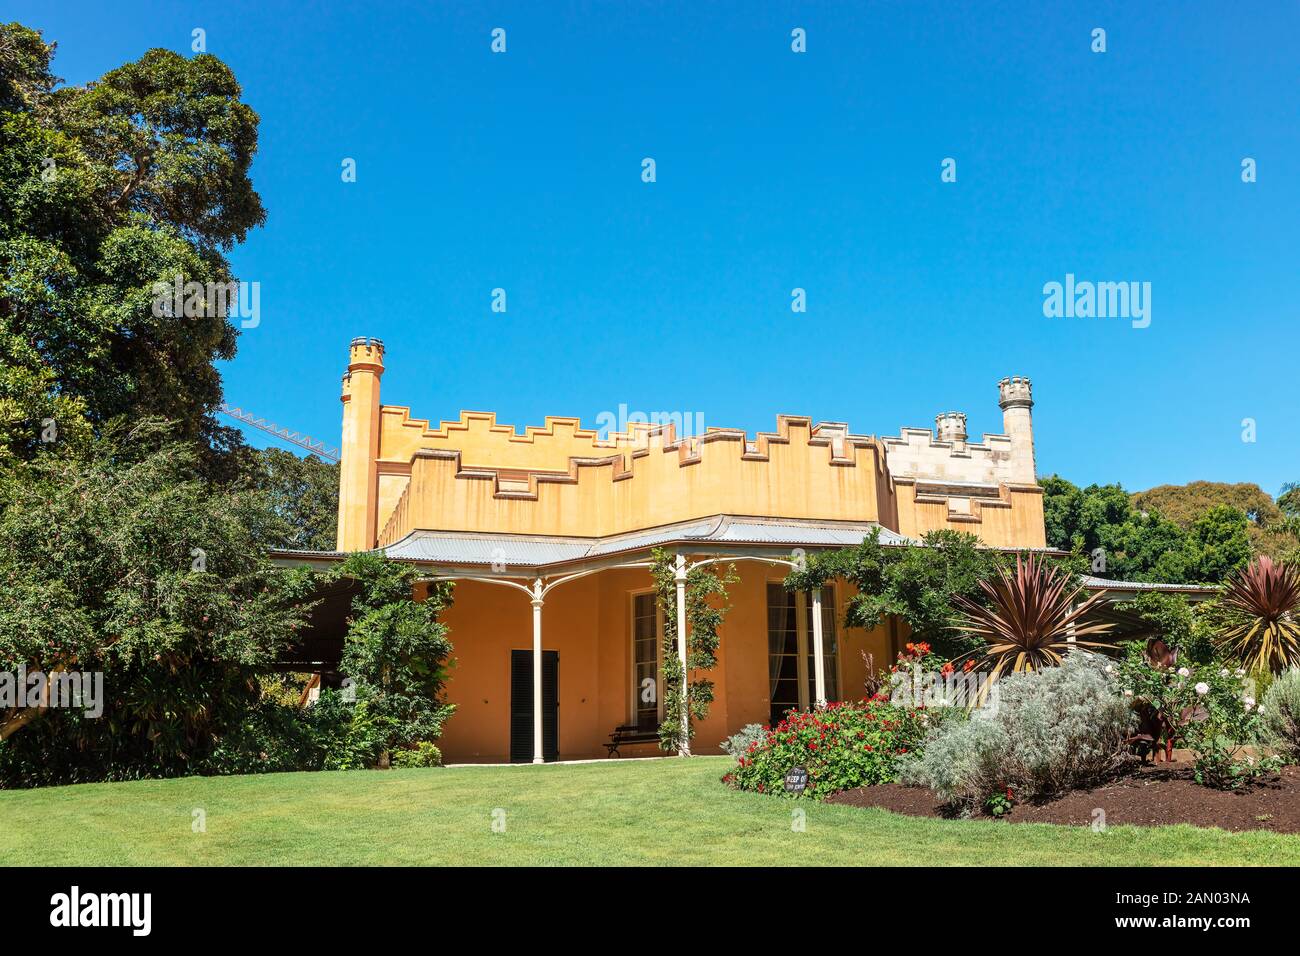 Vaucluse House, ein Herrenhaus aus dem 19. Jahrhundert, von seinen ursprünglichen Gärten und bewaldeten Gelände in der Sydney Vorort von Vaucluse, Australien umgeben. Stockfoto